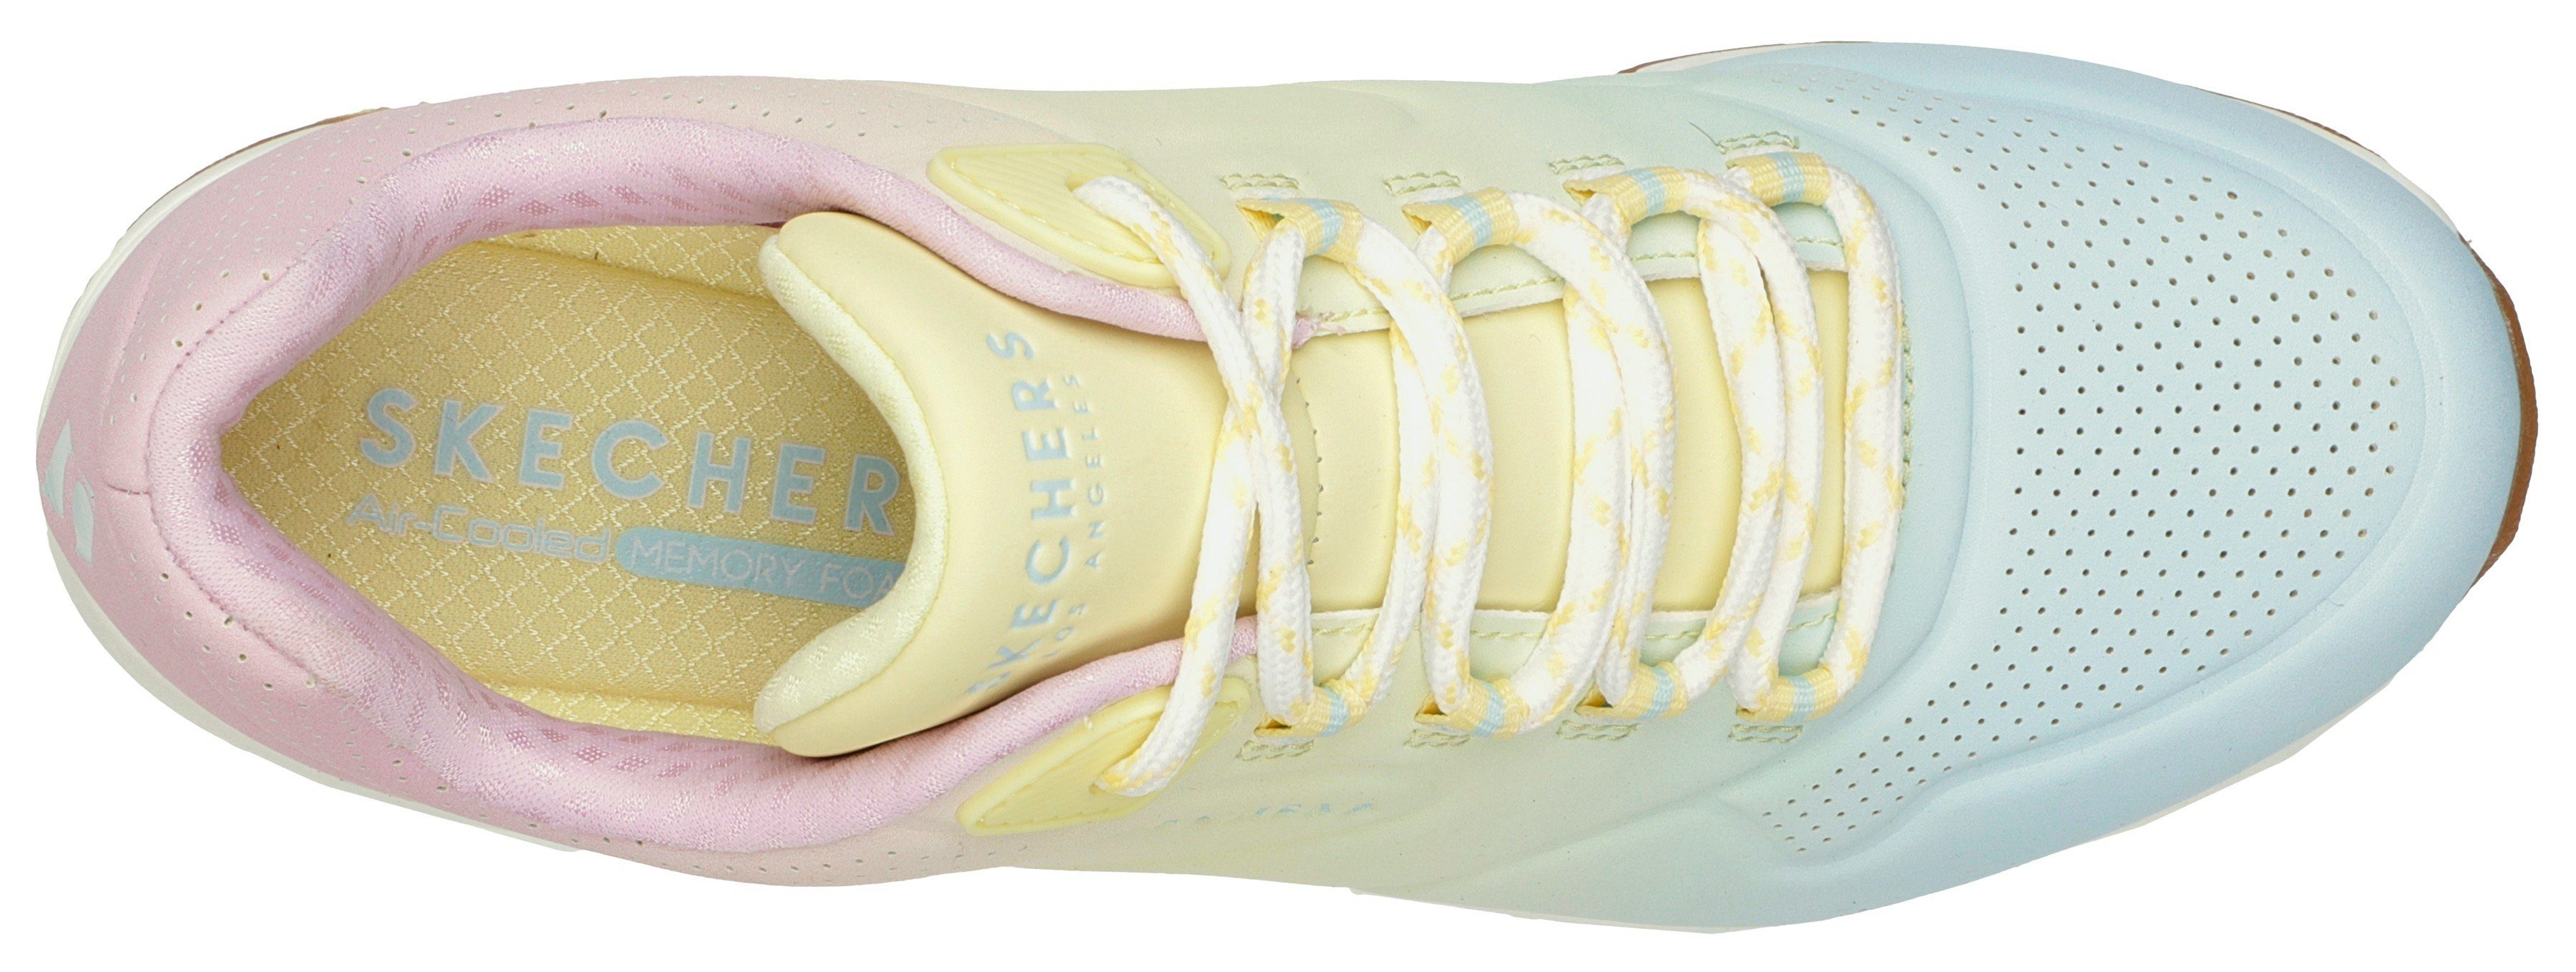 AWAY weiß-kombiniert in OMBRE UNO Skechers Sneaker Farbkombi leuchtender 2